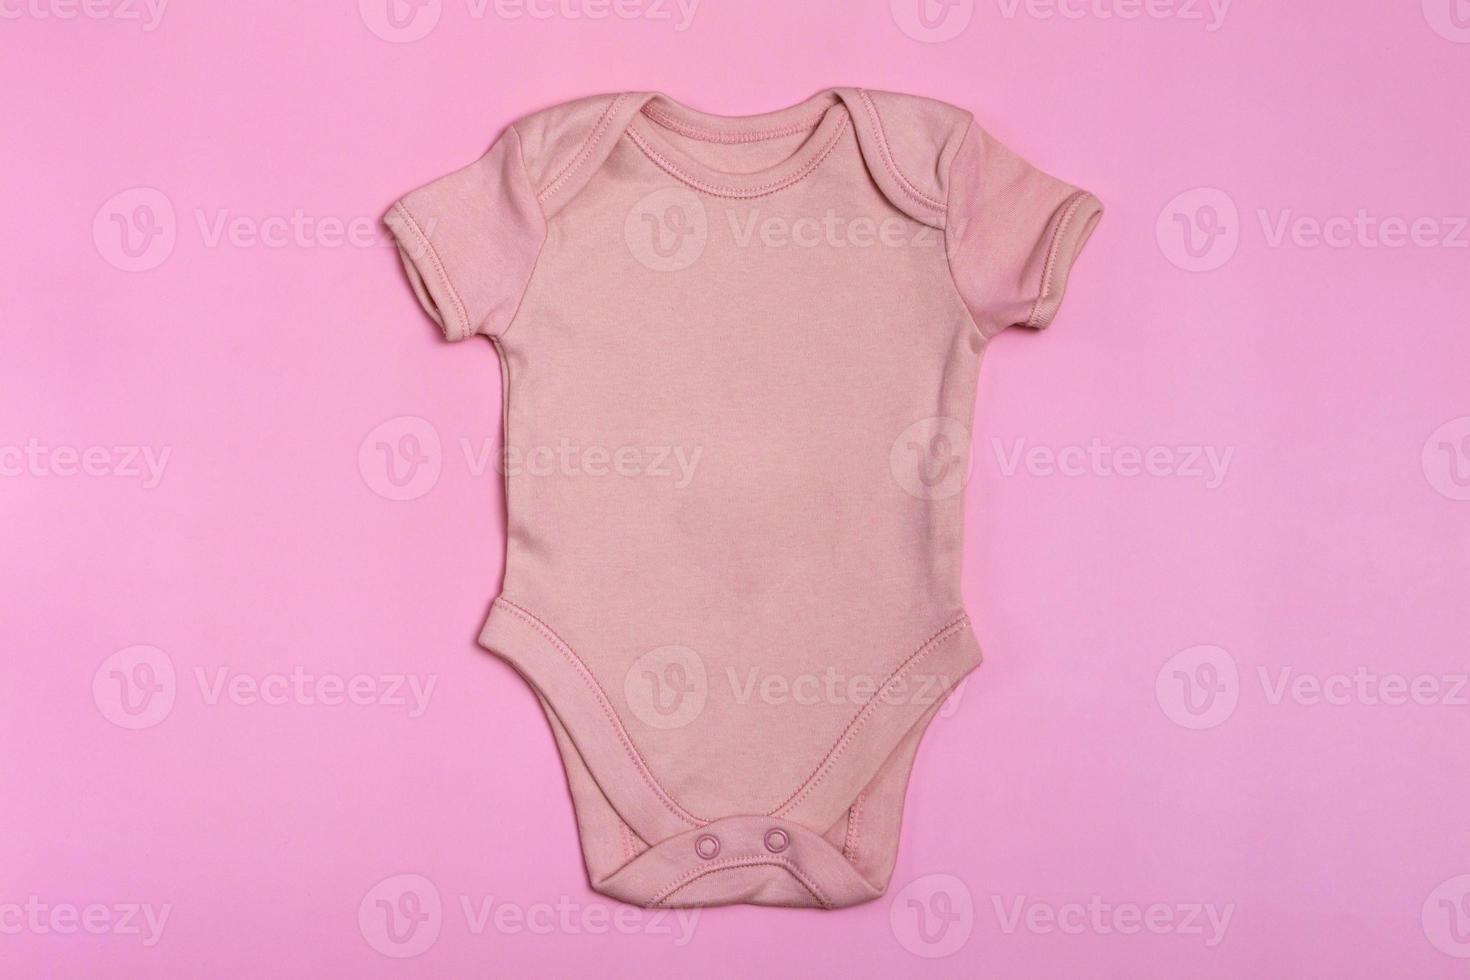 roze lege baby Romper sjabloon, mock up close-up op roze achtergrond. baby bodysuit, jumpsuit voor pasgeborenen. uitzicht van boven foto